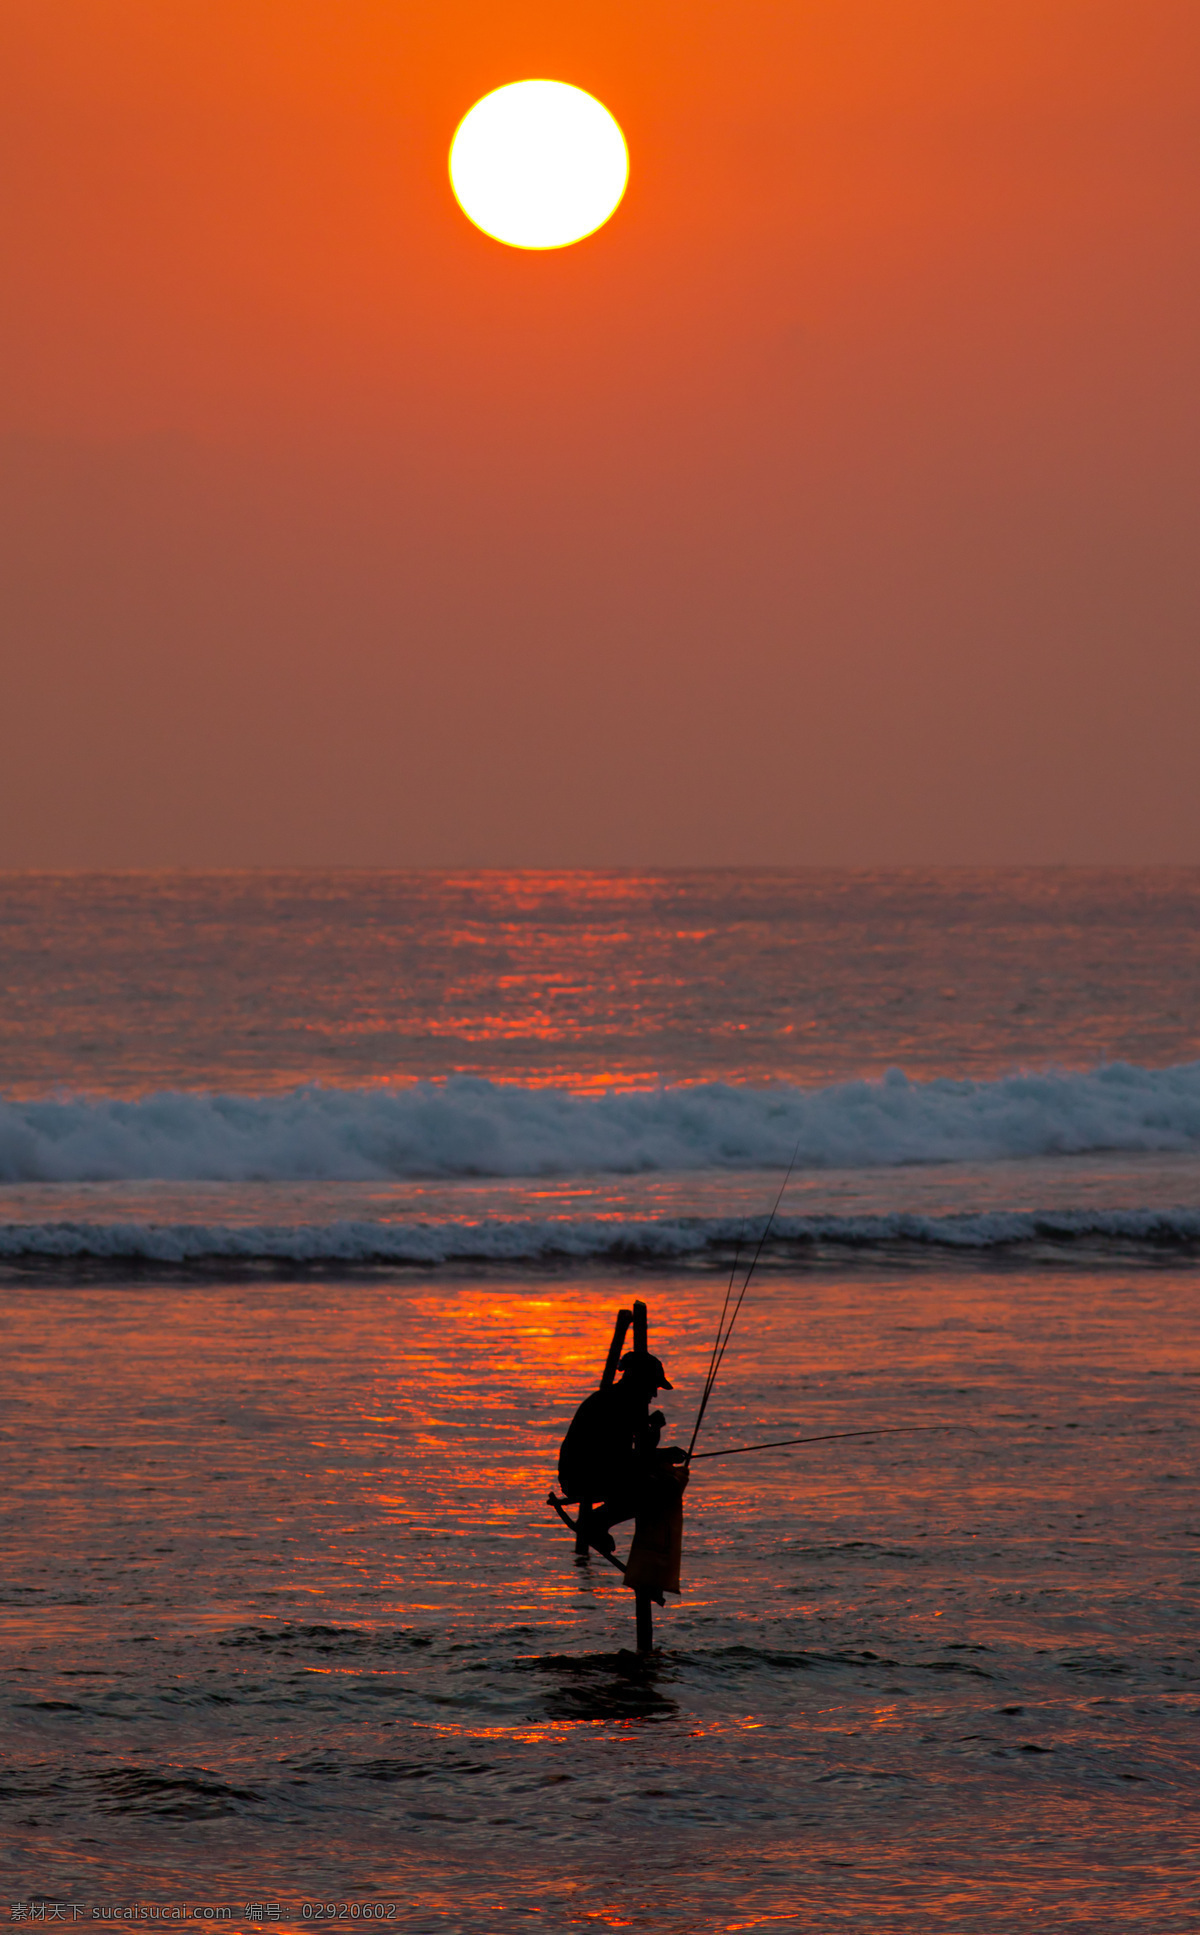 日出 下 钓鱼 人 晚霞 大海 海边 鱼工具 娱乐生活 鱼杆 钓鱼人物 生活人物 人物图片